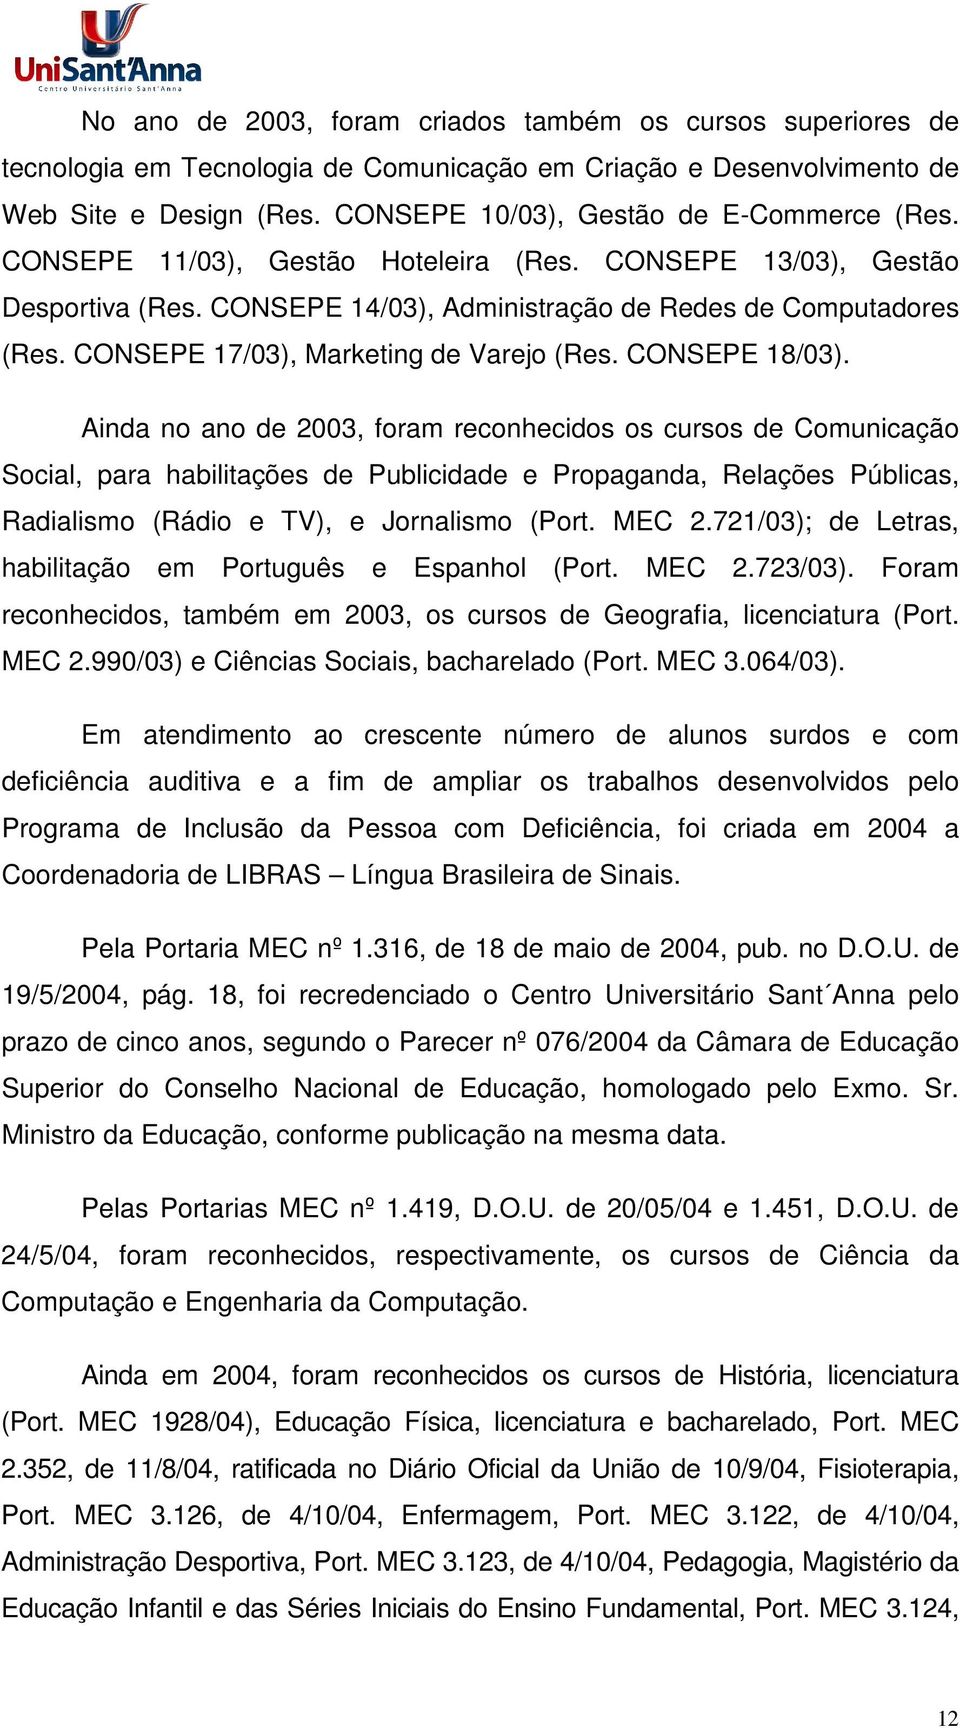 Ainda no ano de 2003, foram reconhecidos os cursos de Comunicação Social, para habilitações de Publicidade e Propaganda, Relações Públicas, Radialismo (Rádio e TV), e Jornalismo (Port. MEC 2.